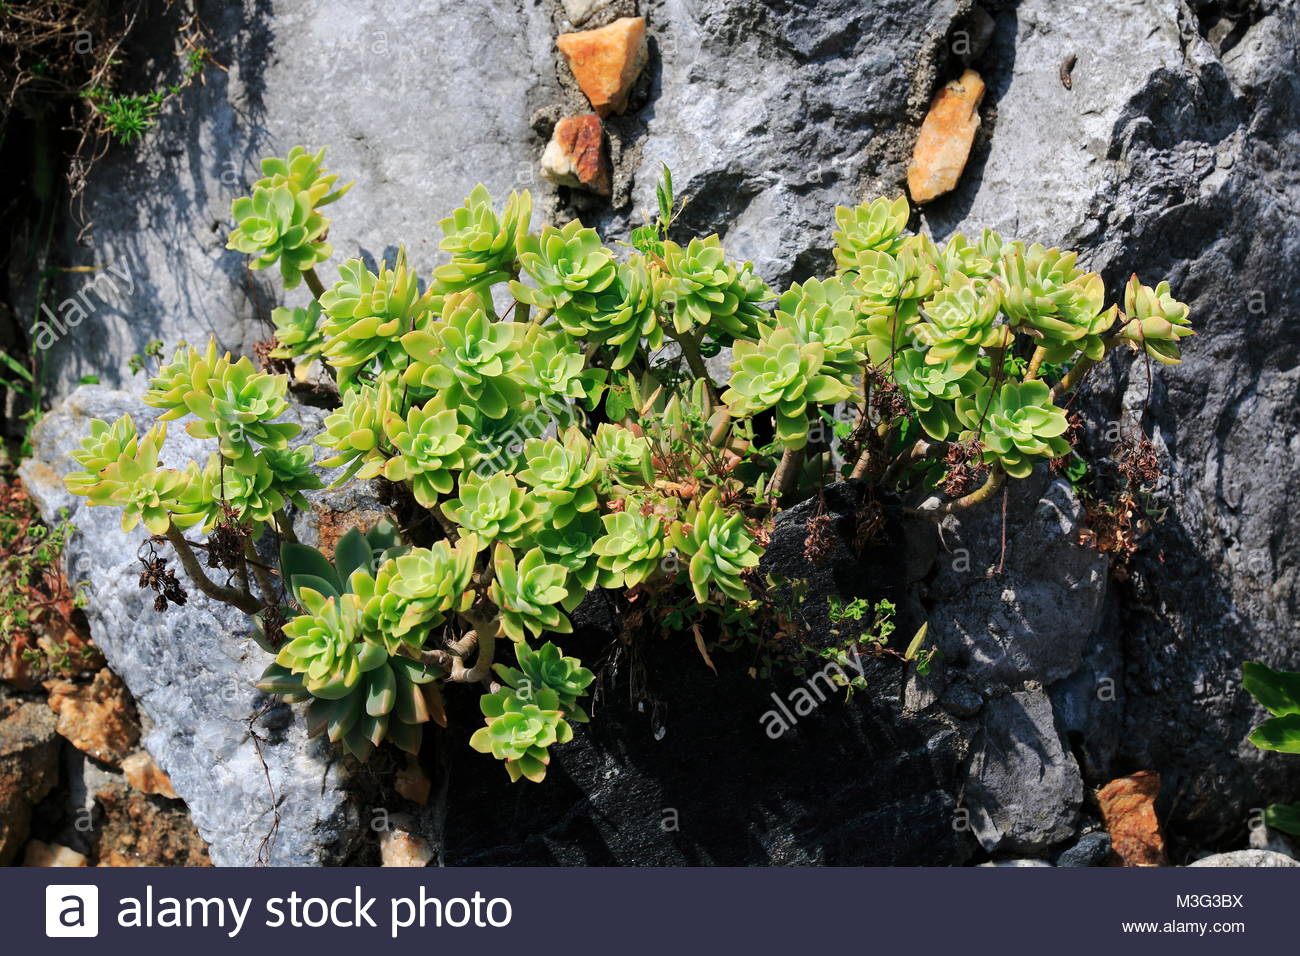 hauswurz dachwurz steinwurz wchs an einem felsen in einem steingarten M3G3BX